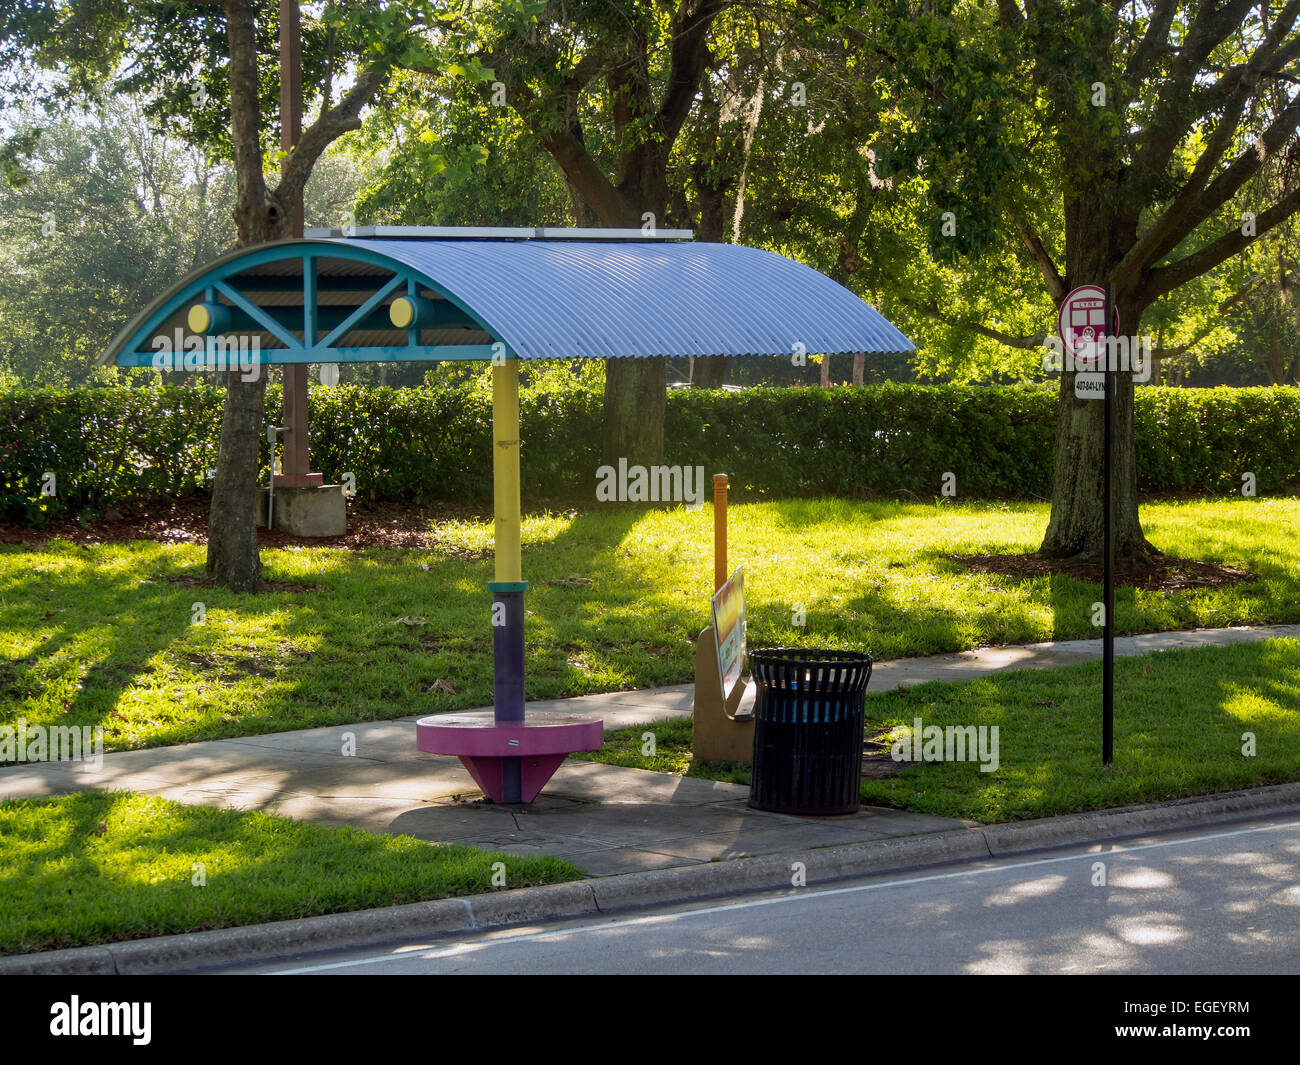 Public Bus Stop in Orlando, Florida, USA Stock Photo